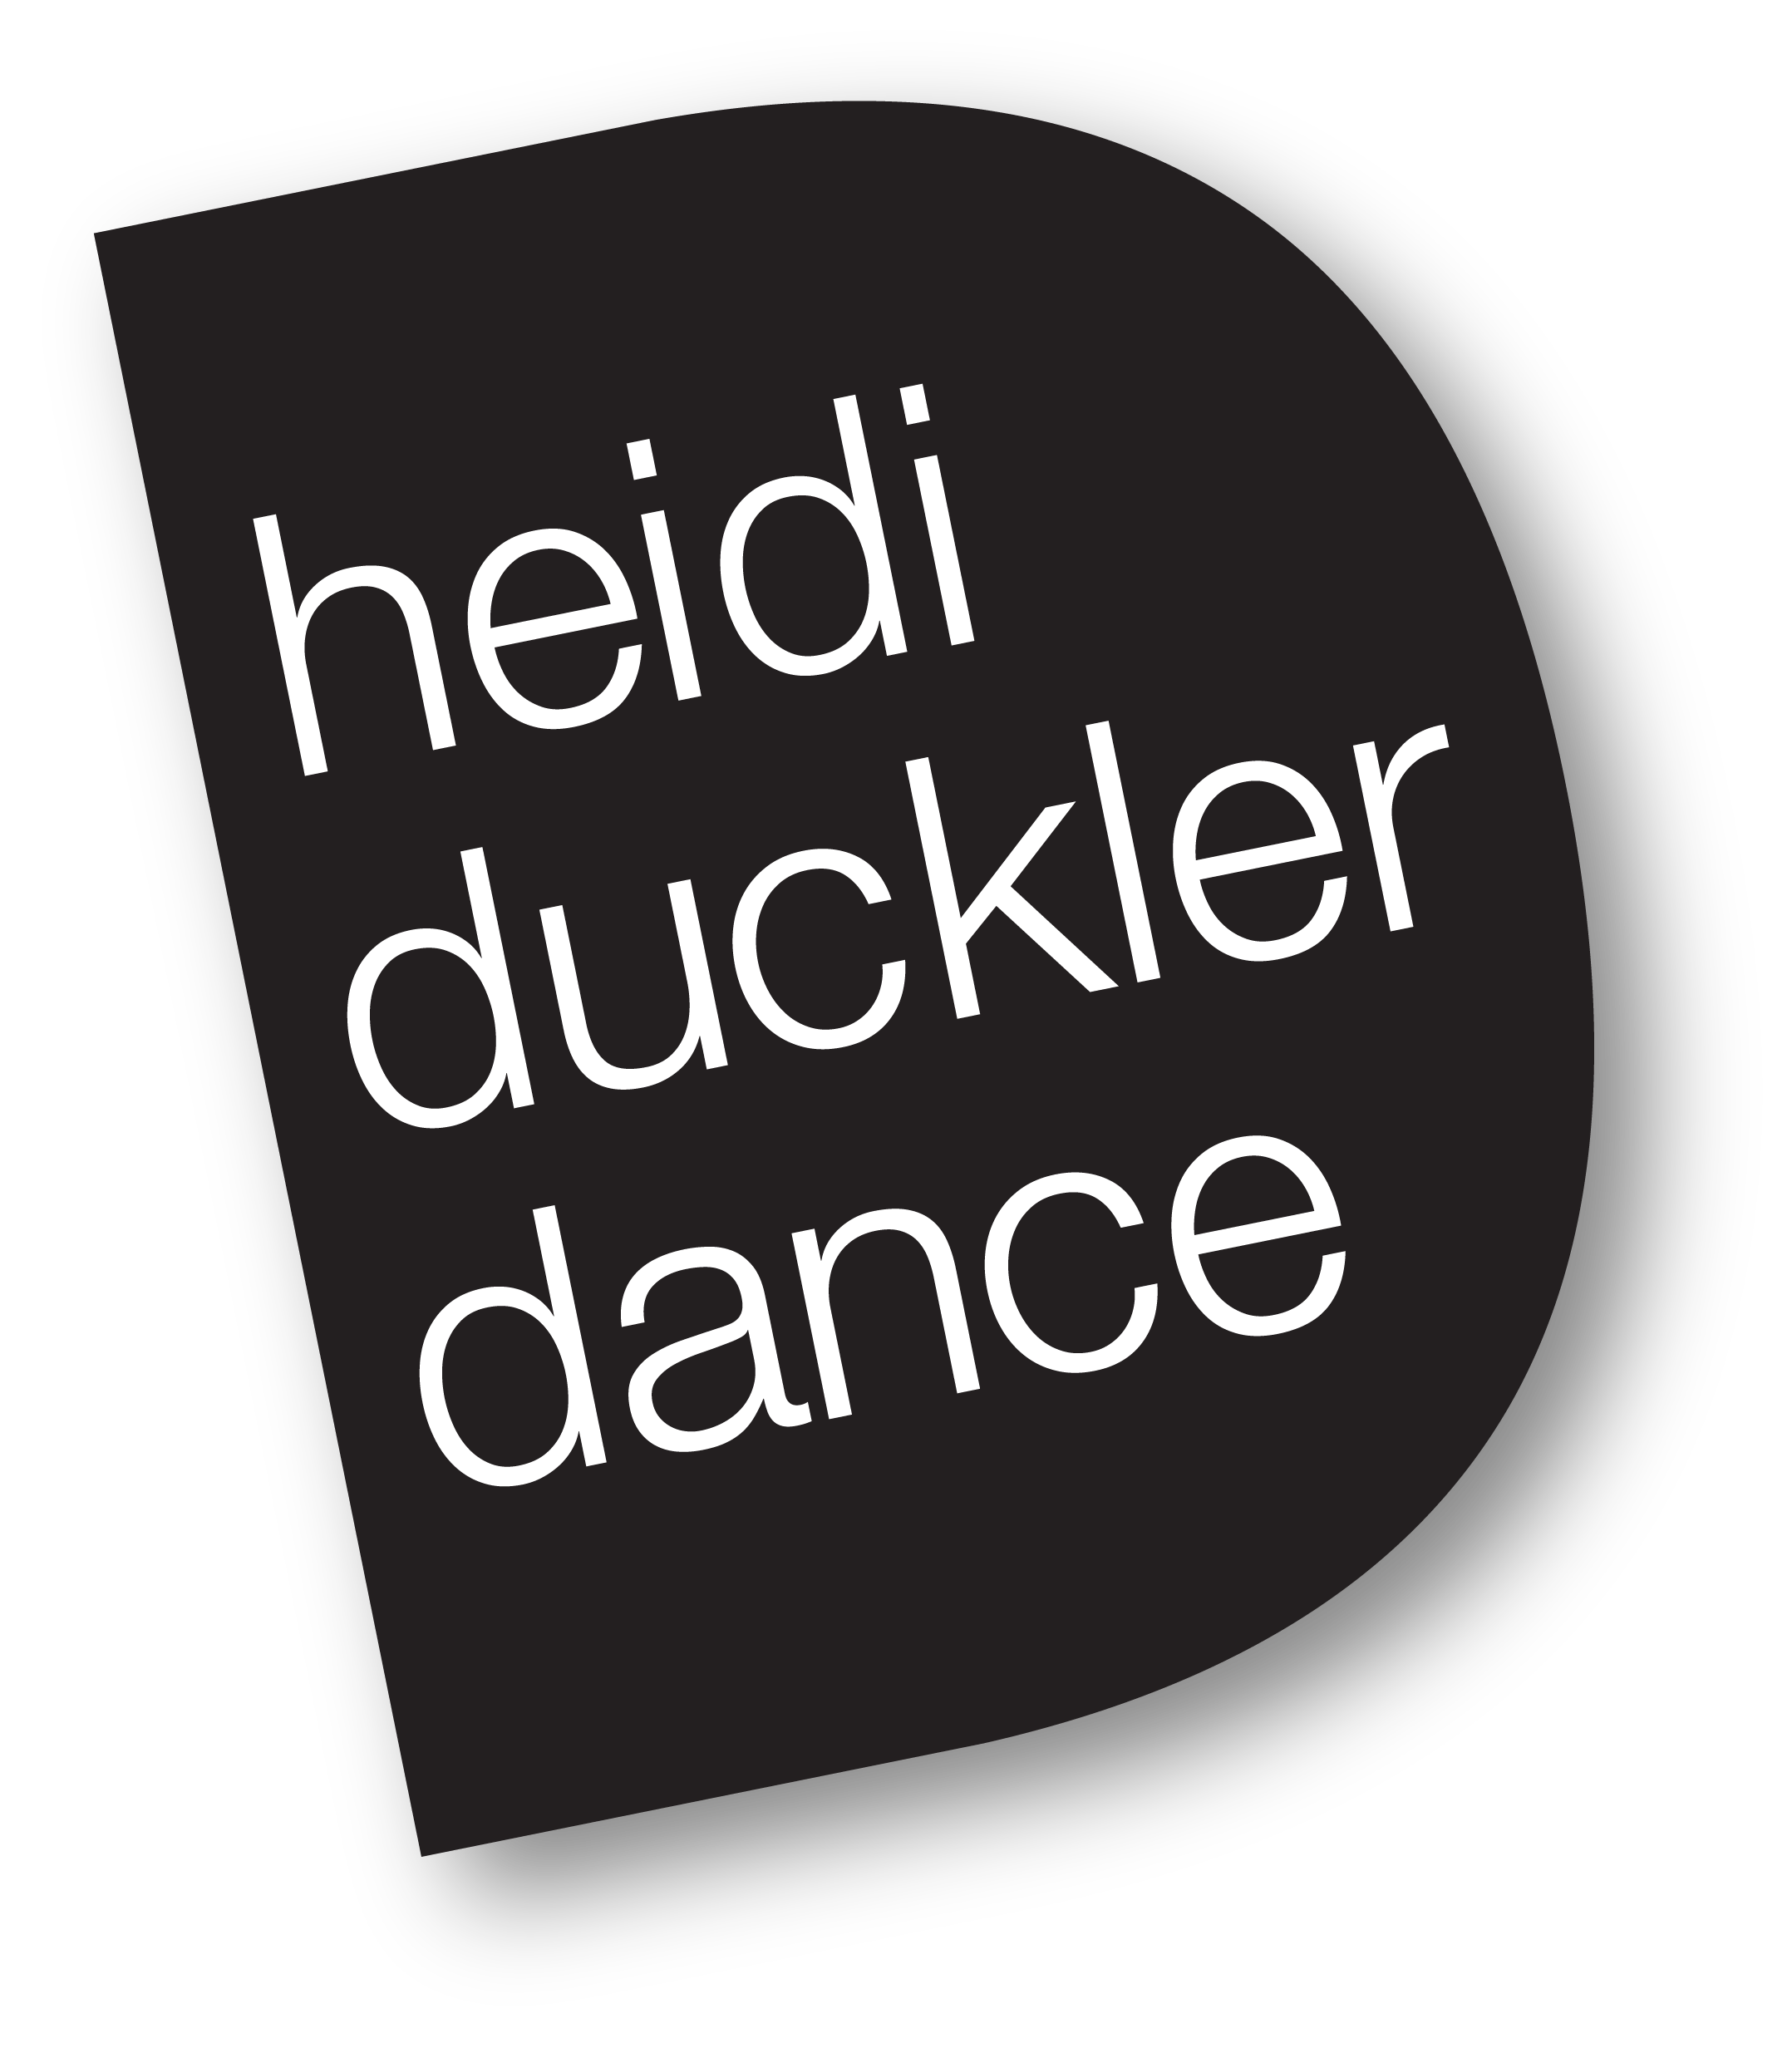 Heidi Duckler Dance